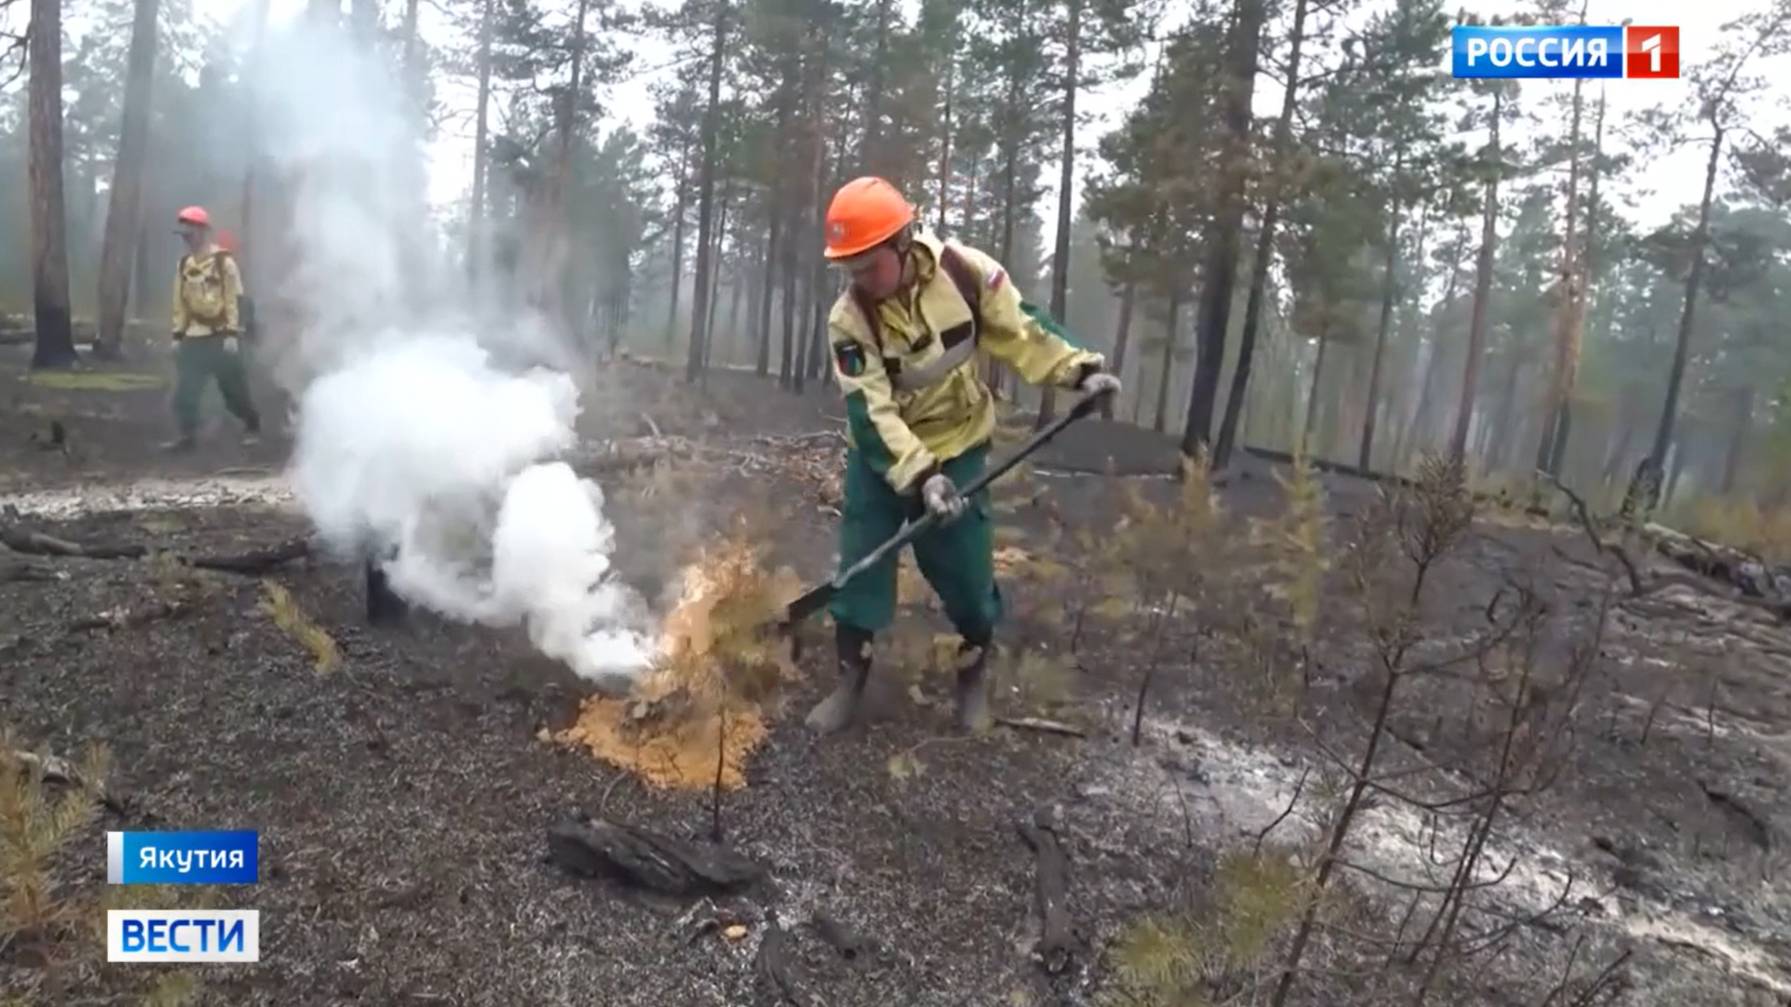 Россия 1 # Вести_В Якутии снова выросло число лесных пожаров